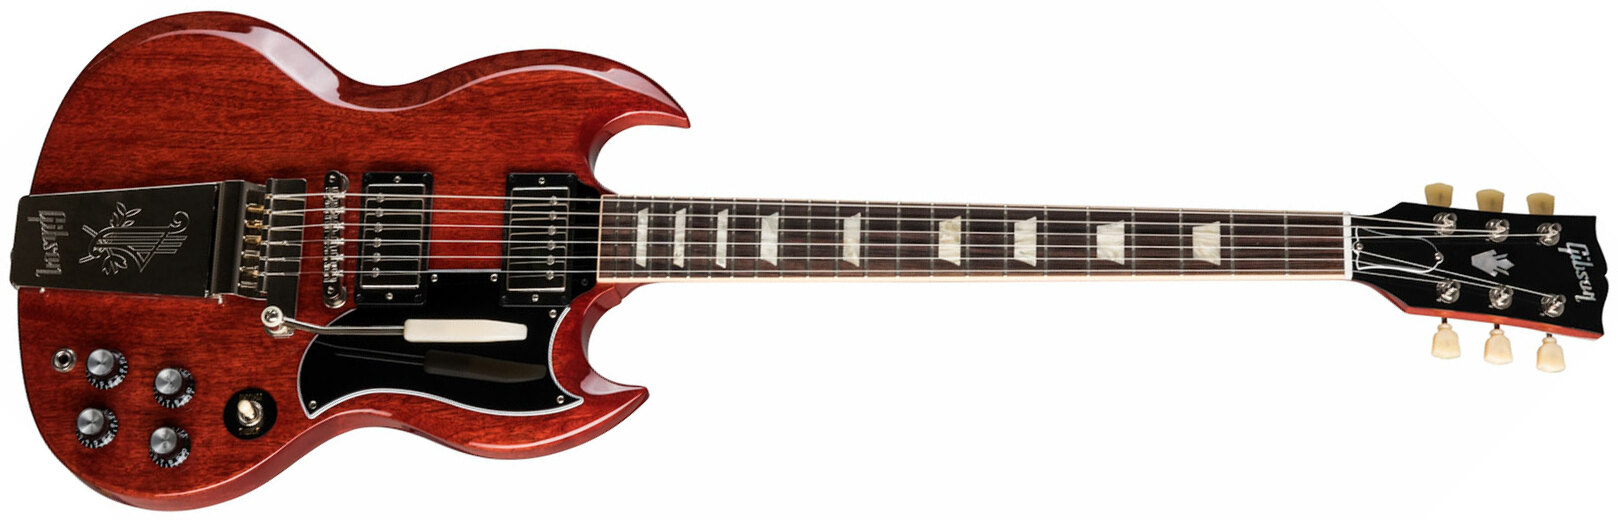 Gibson Sg Standard '61 Maestro Vibrola Original 2h Trem Rw - Retro-Rock-E-Gitarre - Main picture